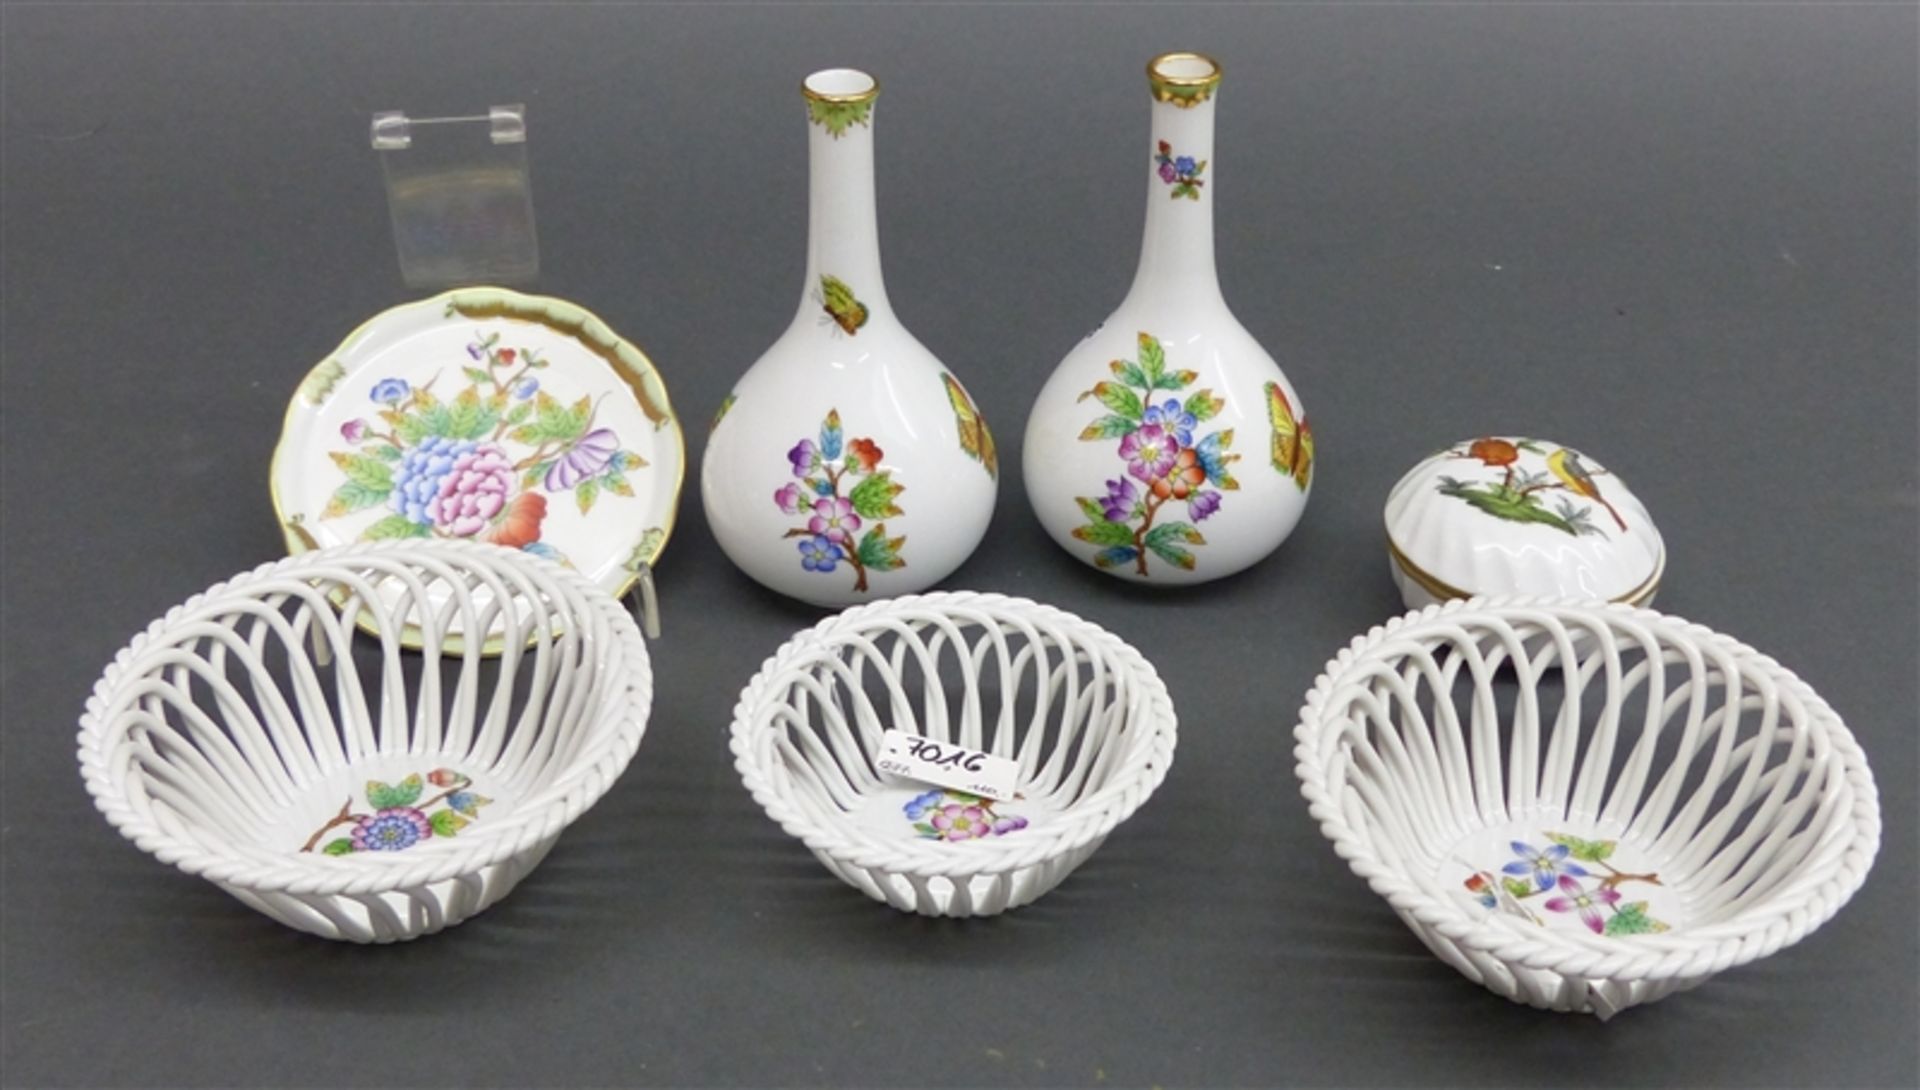 Konvolut Porzellan Manufaktur Herend, Blumen, Vögel und Schmetterlingsdekor, 3 Korbschälchen,